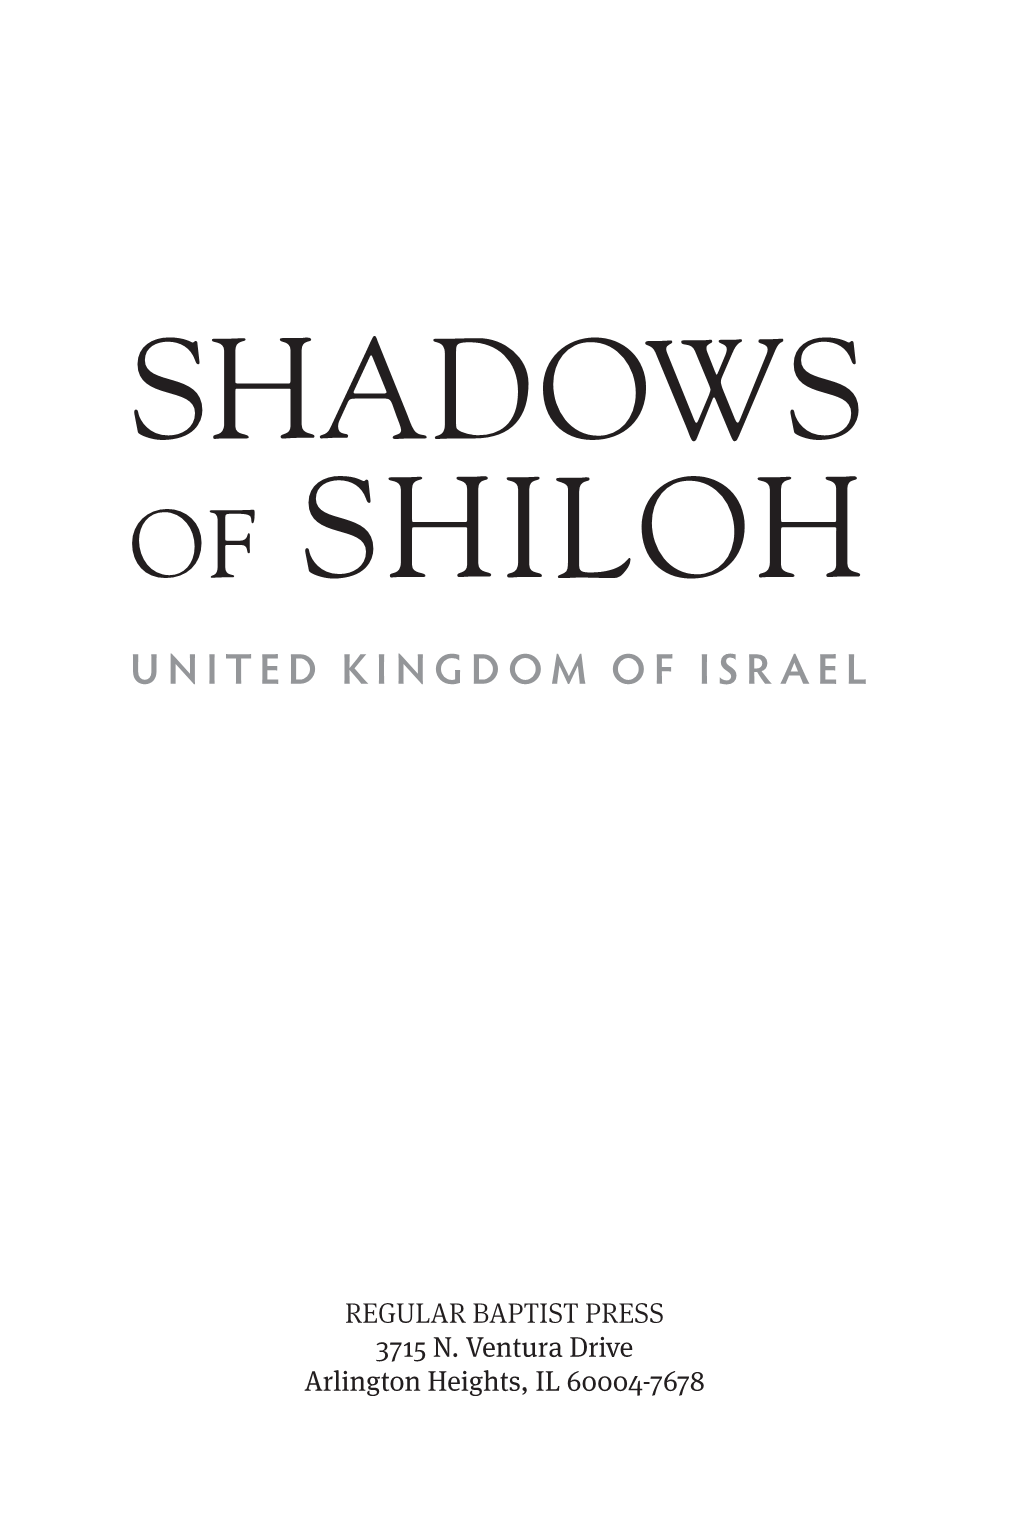 Shadows of Shiloh United Kingdom of Israel